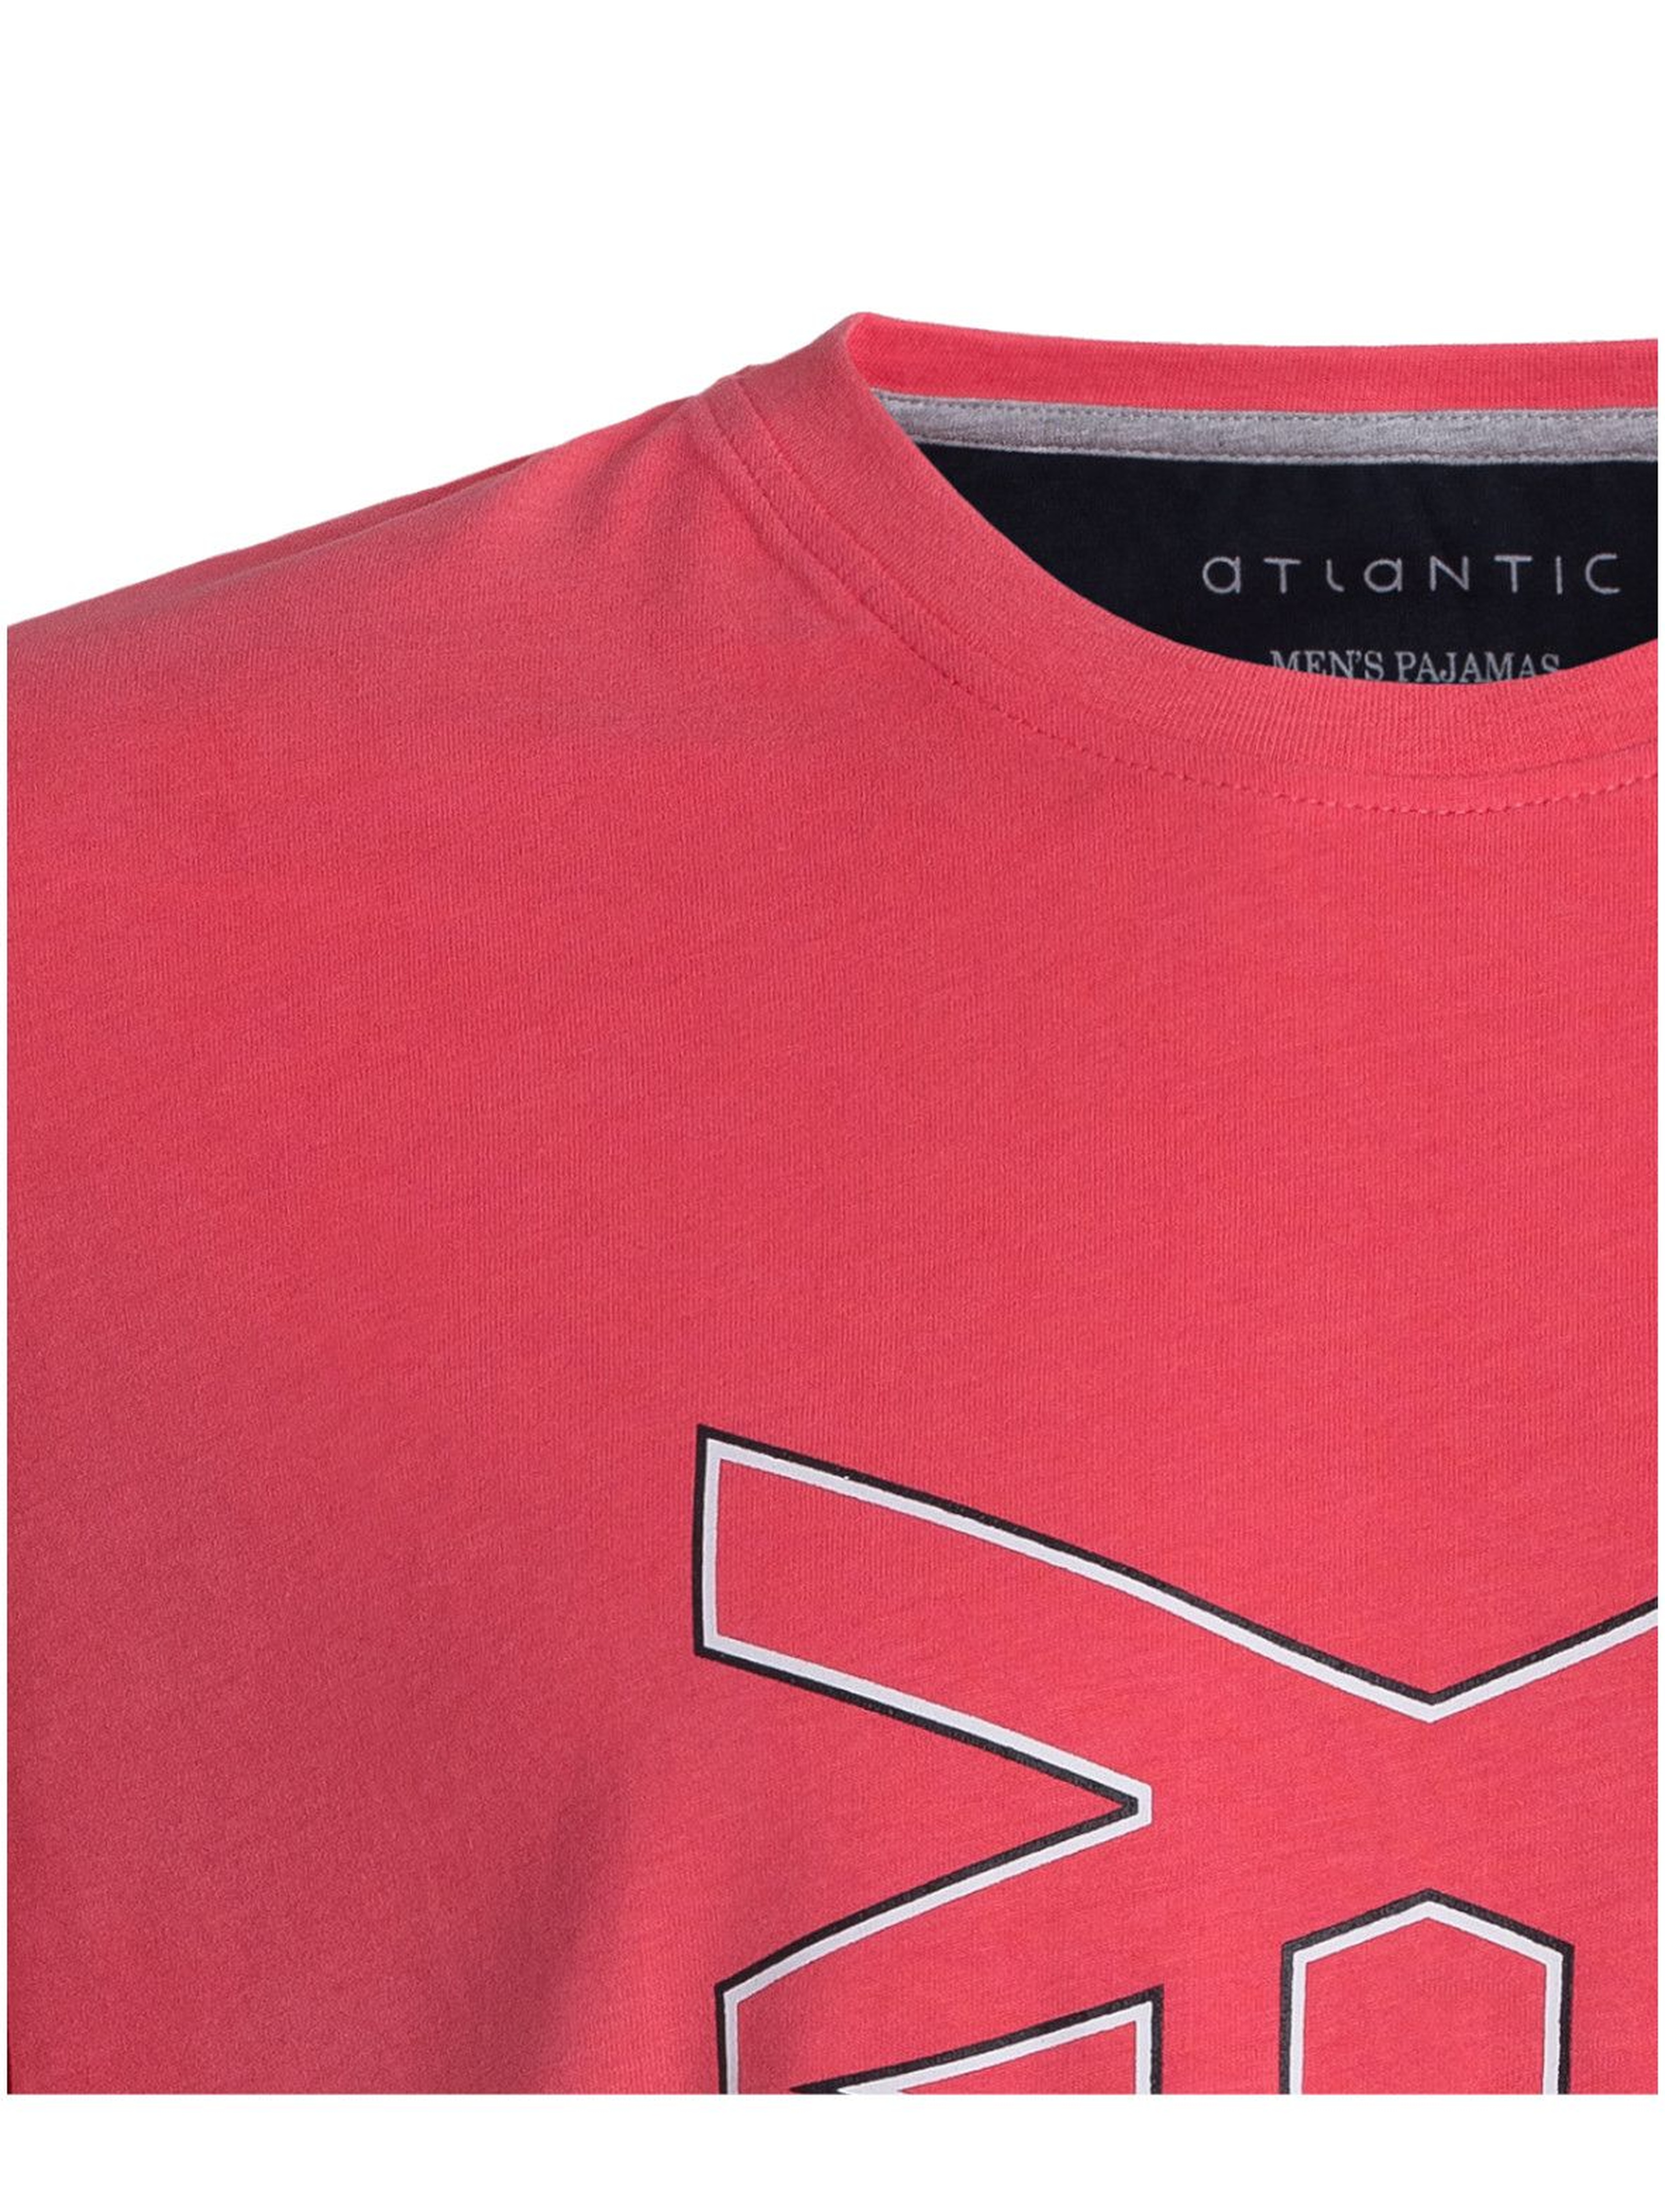 Piżama męska spodnie z długimi nogawkami + czerwony t-shirt Atlantic